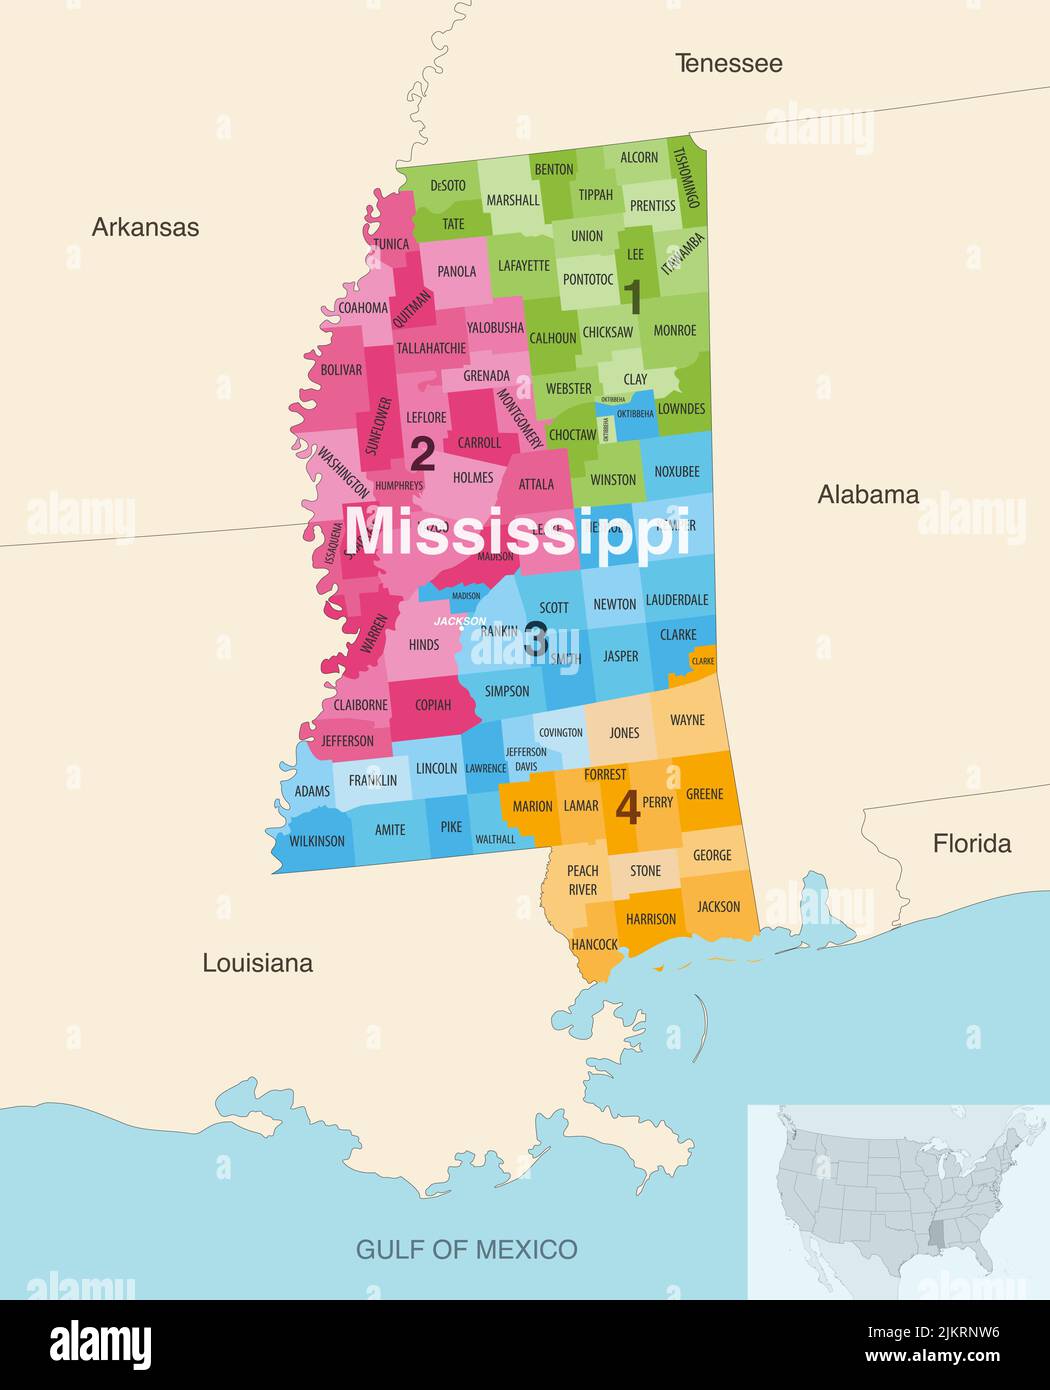 Le contee dello stato del Mississippi sono colorate da una mappa vettoriale dei distretti del Congresso con gli stati vicini e le terrotorie Illustrazione Vettoriale